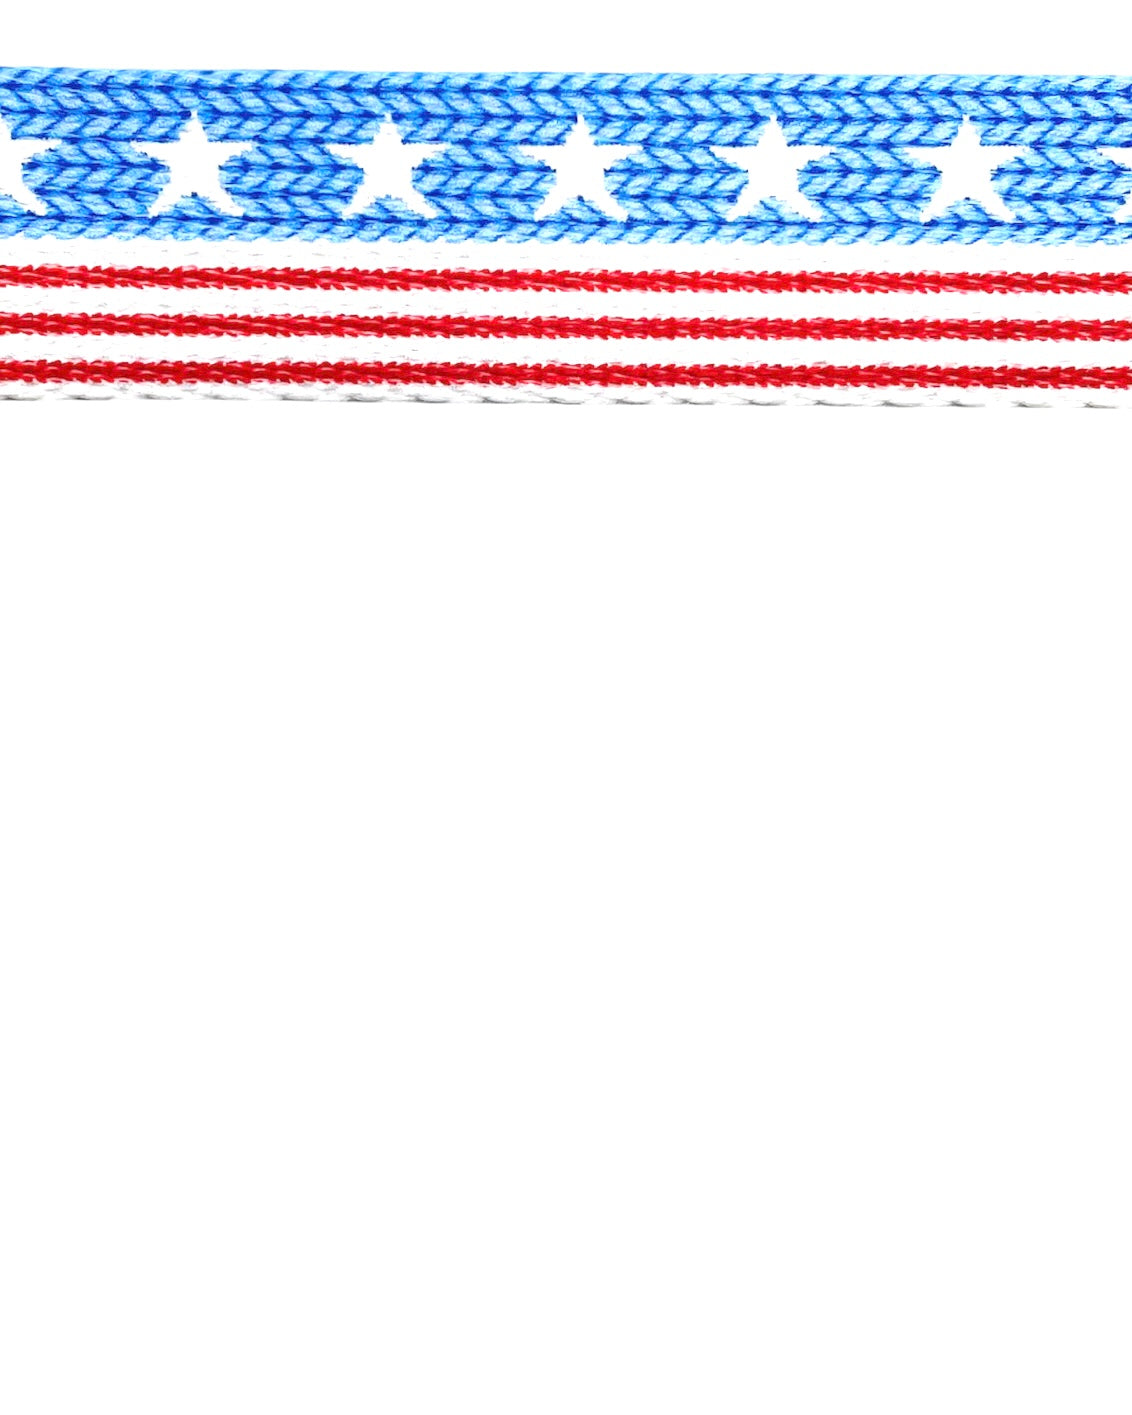 American Flag "Knit" Leash